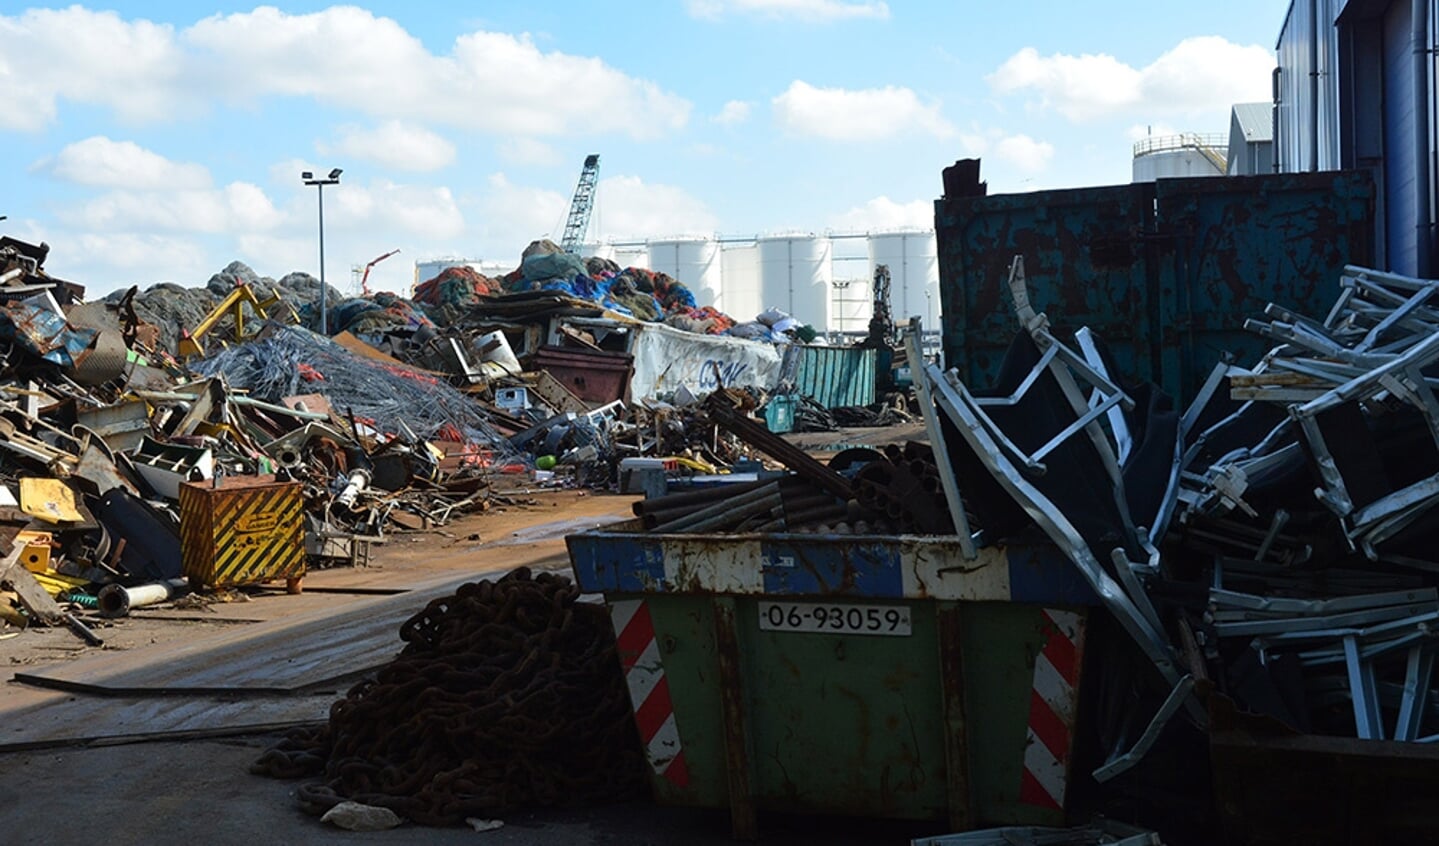  Bergen vast afval van schepen, waaronder netwerk, achter het hoofdkwartier van Bek & Verburg in Rotterdam-Botlek. 